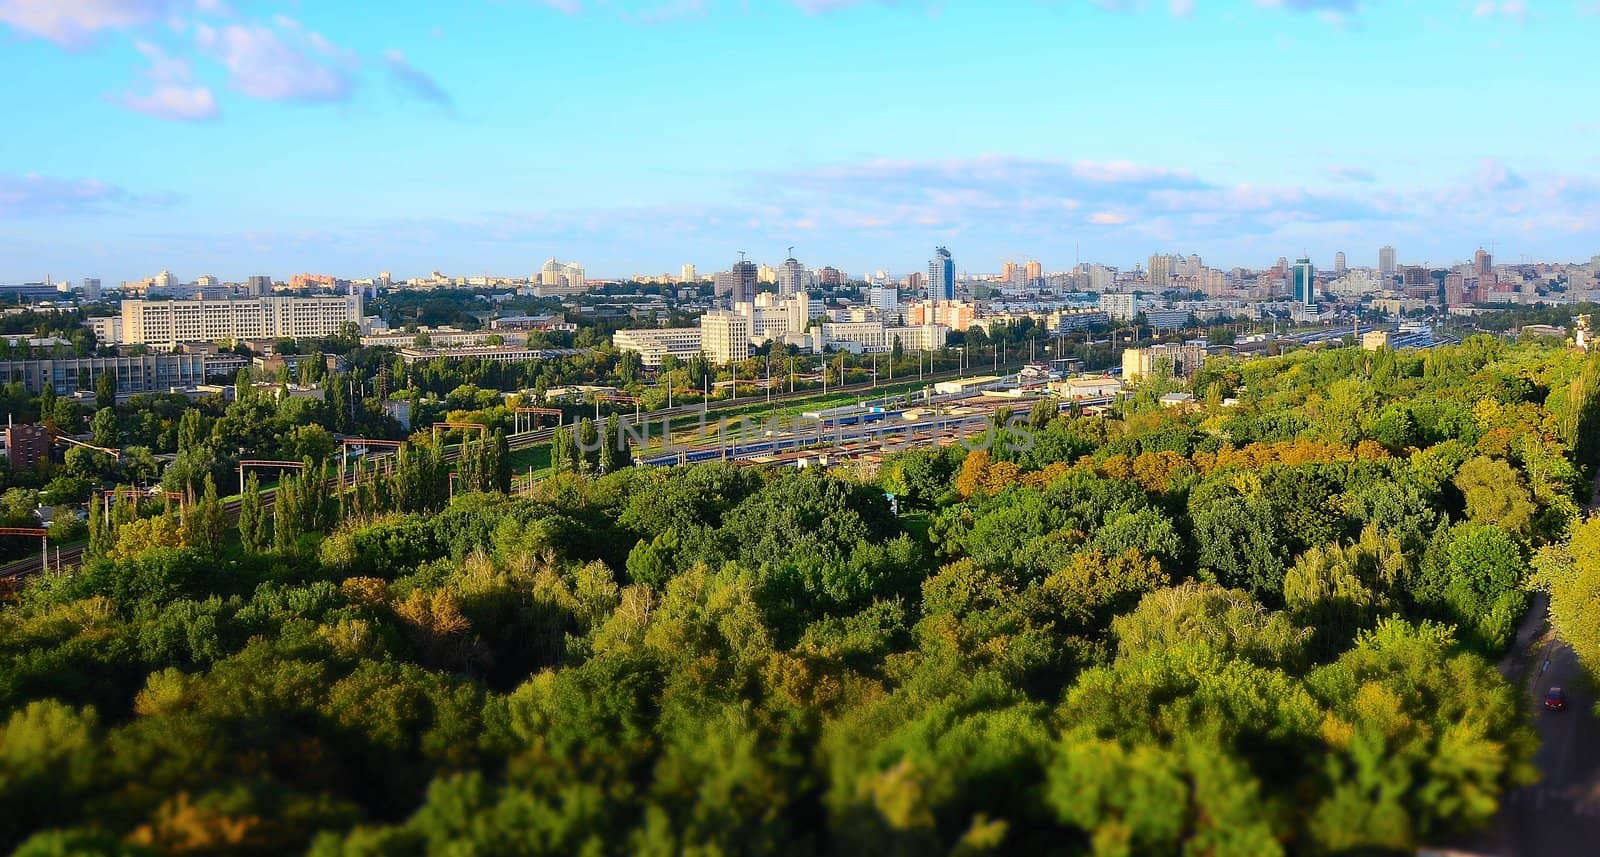 Kyiv city landscape at daytime, summer 2012, Ukraine